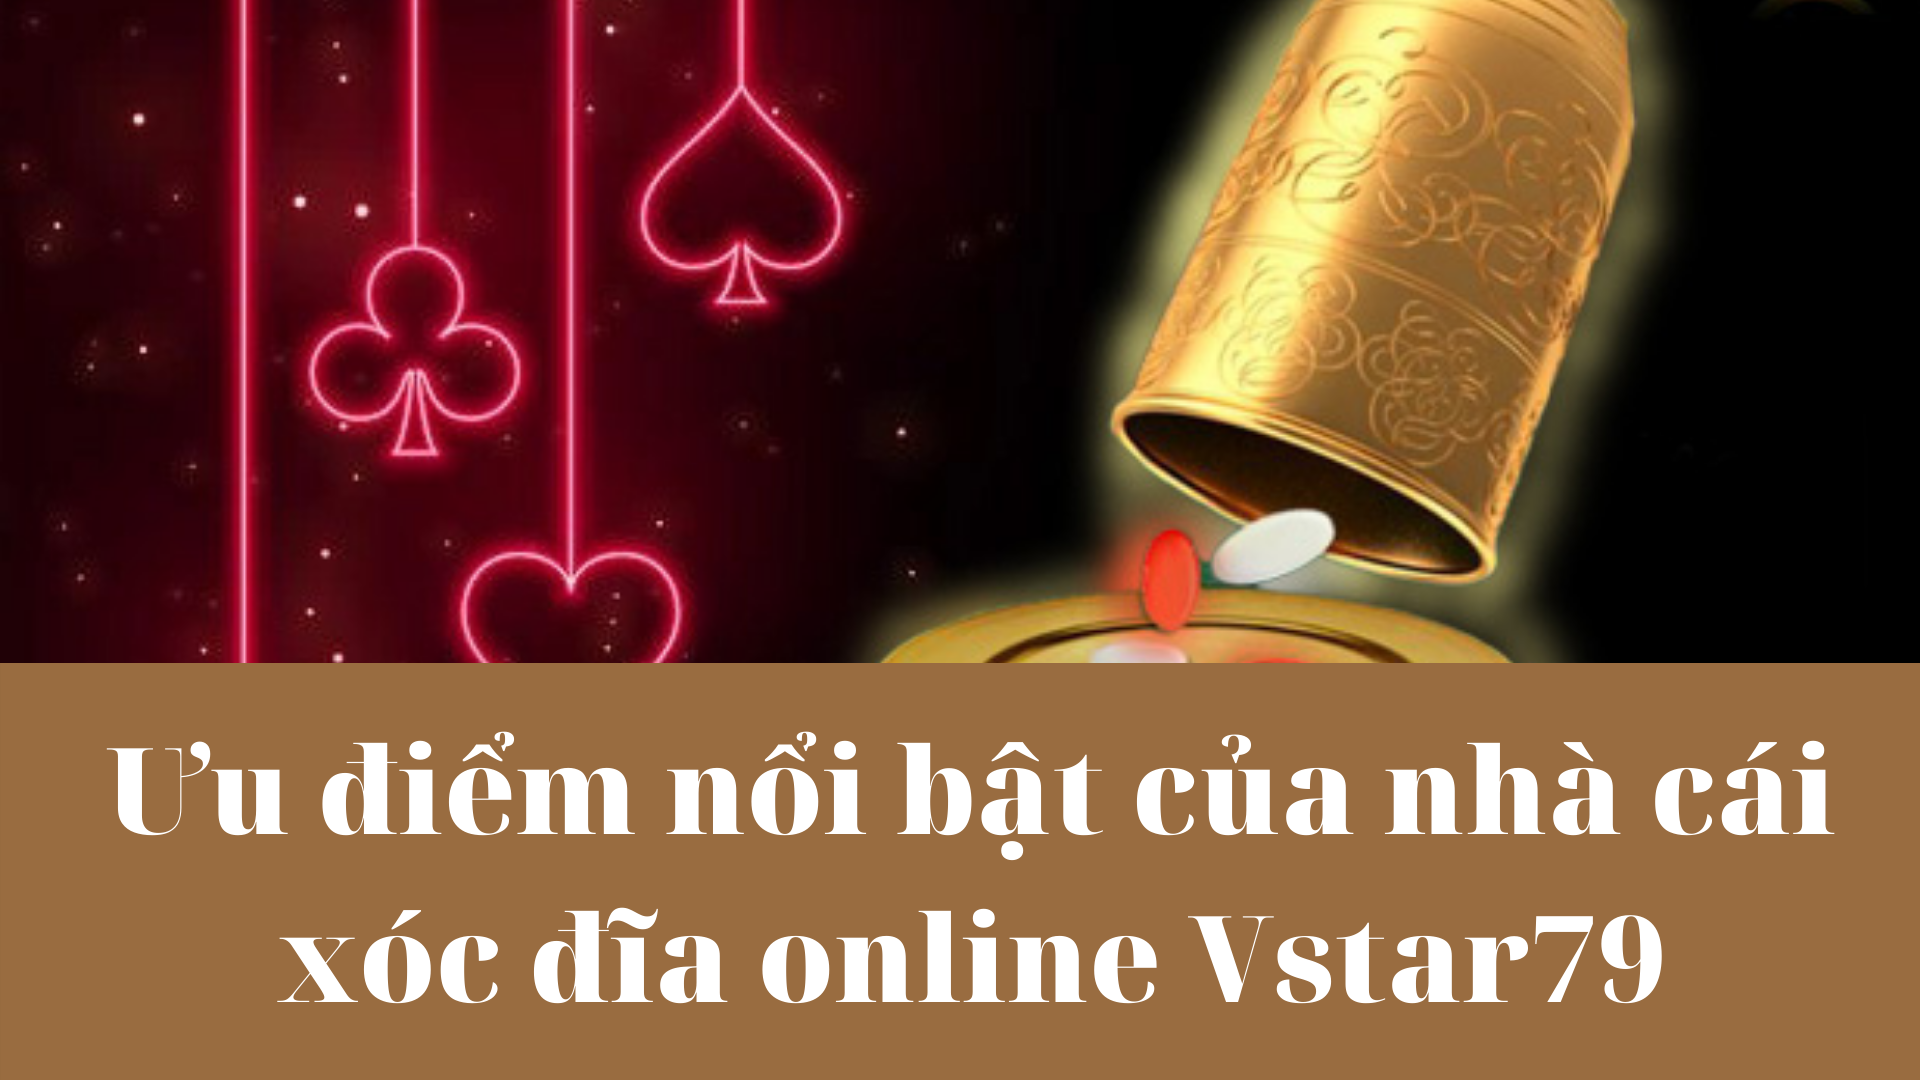 Ưu điểm nổi bật của nhà cái xóc đĩa online Vstar79